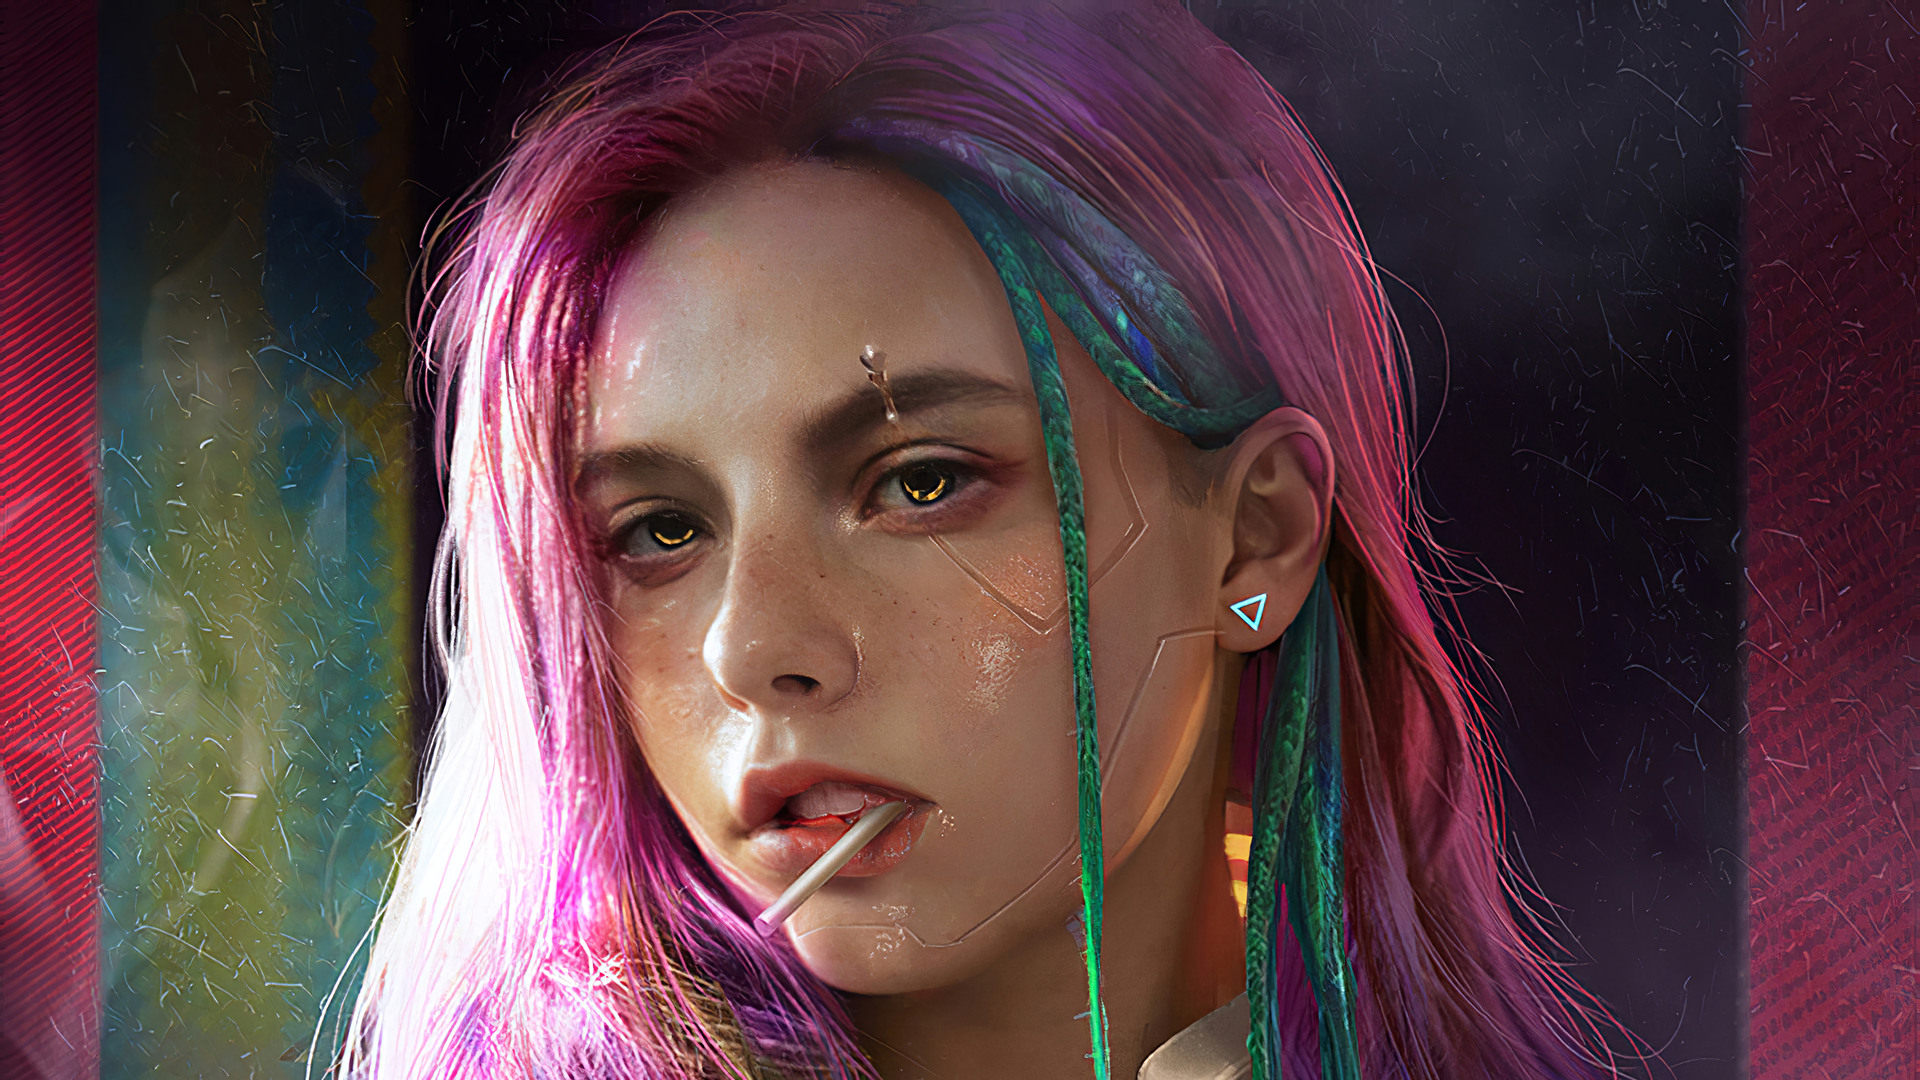 General 1920x1080 artwork cyberpunk Cyberpunk 2077 pink hair science fiction face women